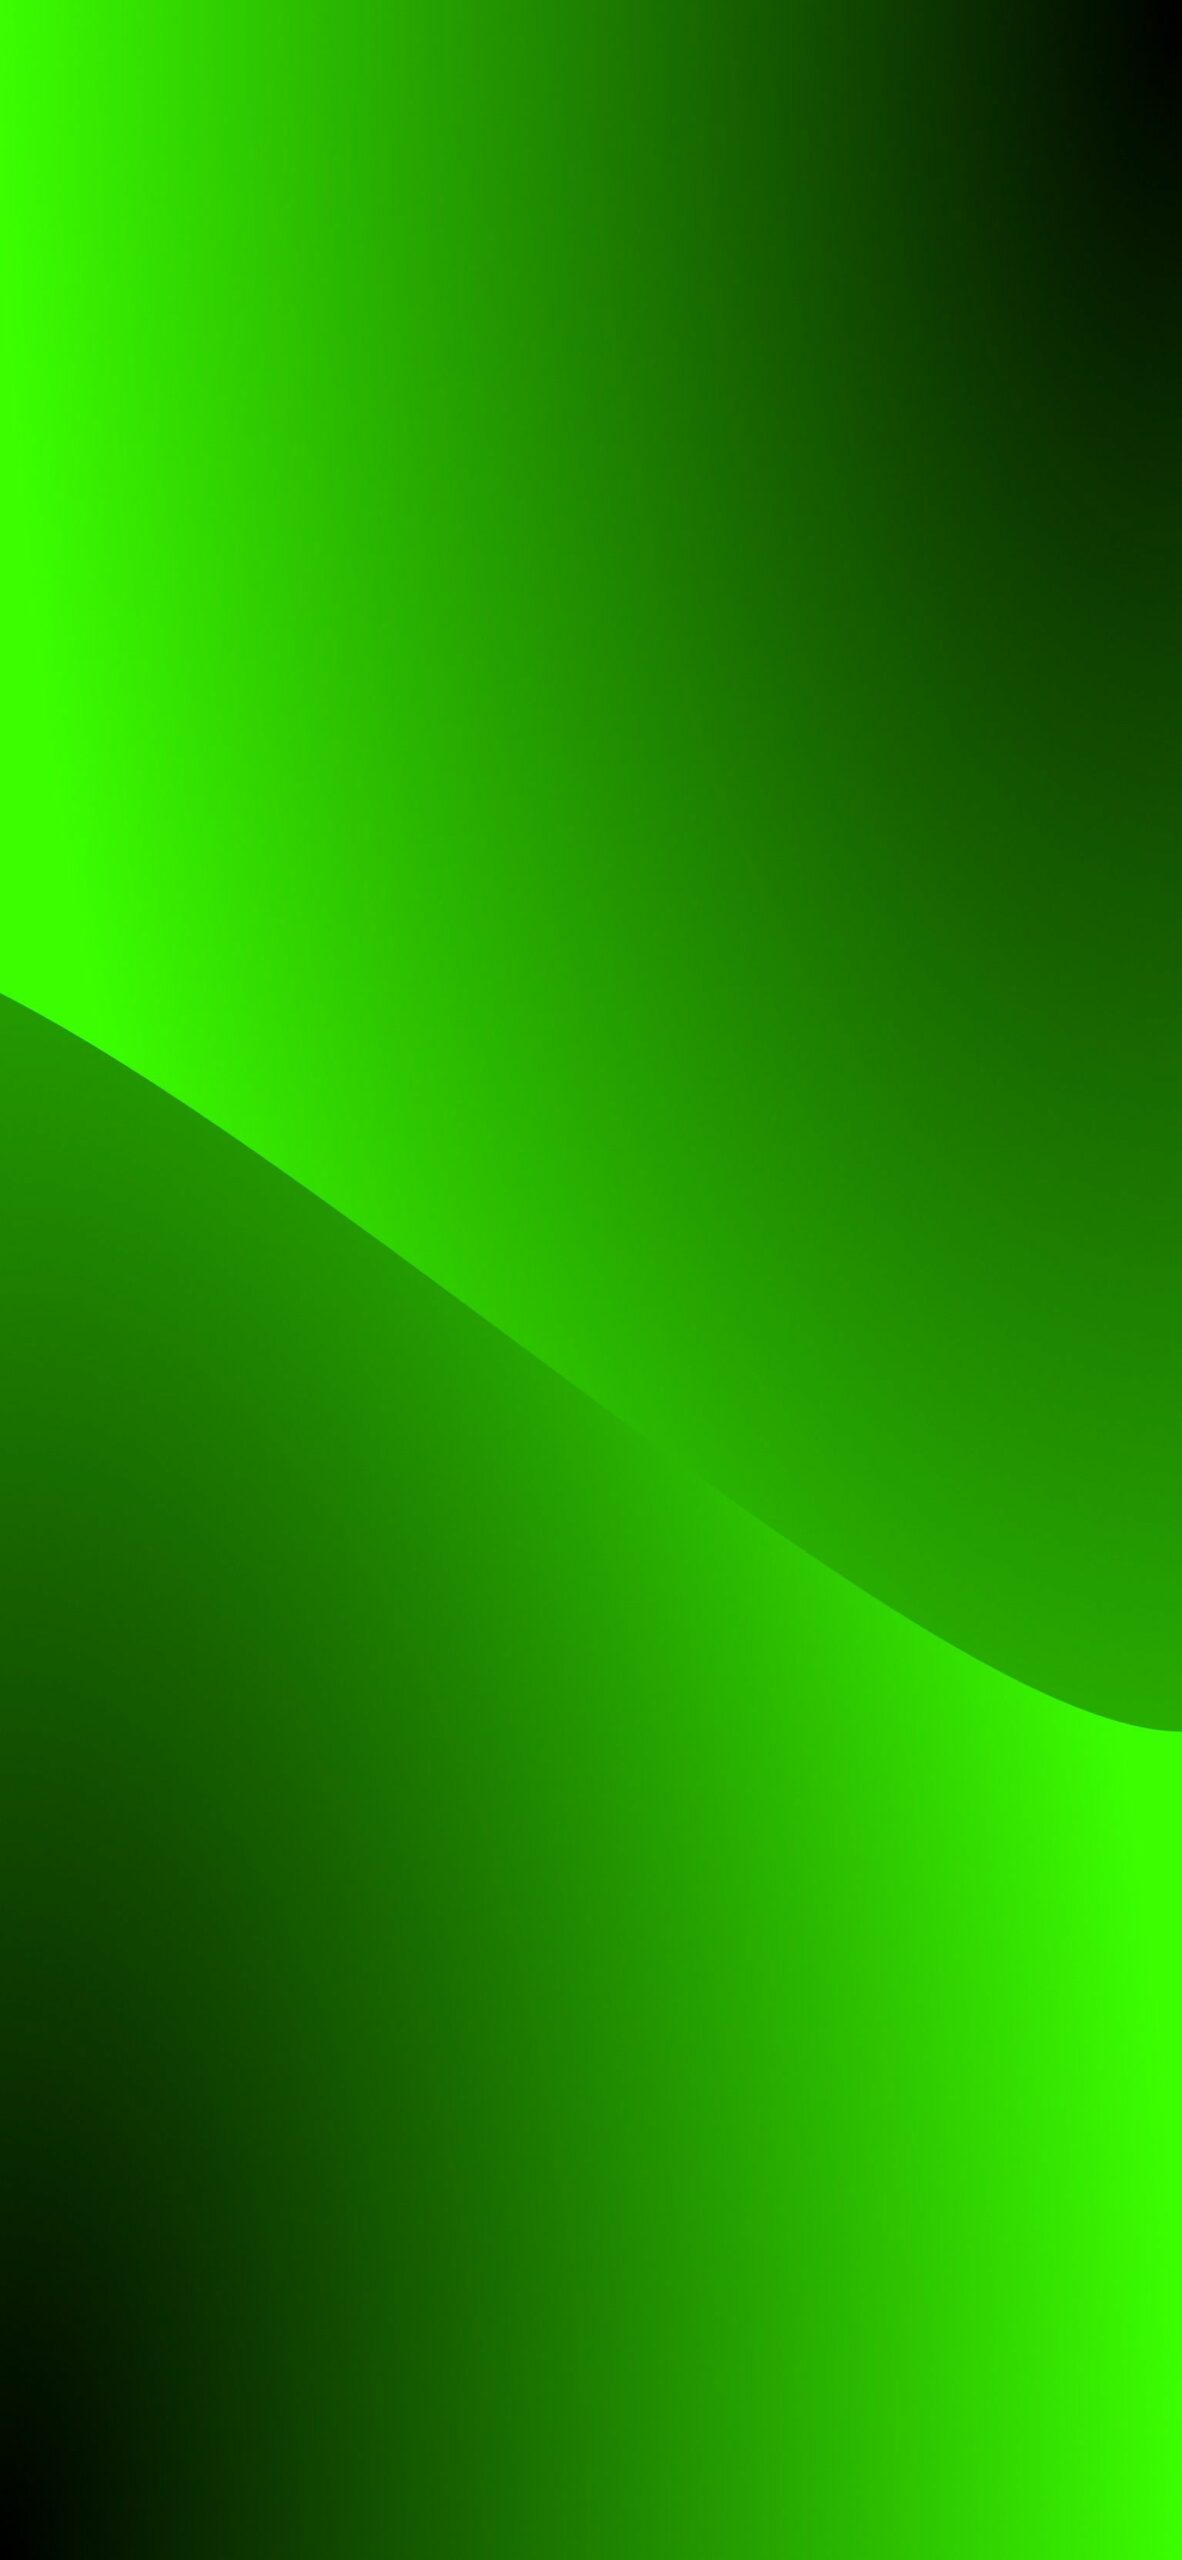 Wallpapers verde em 4k